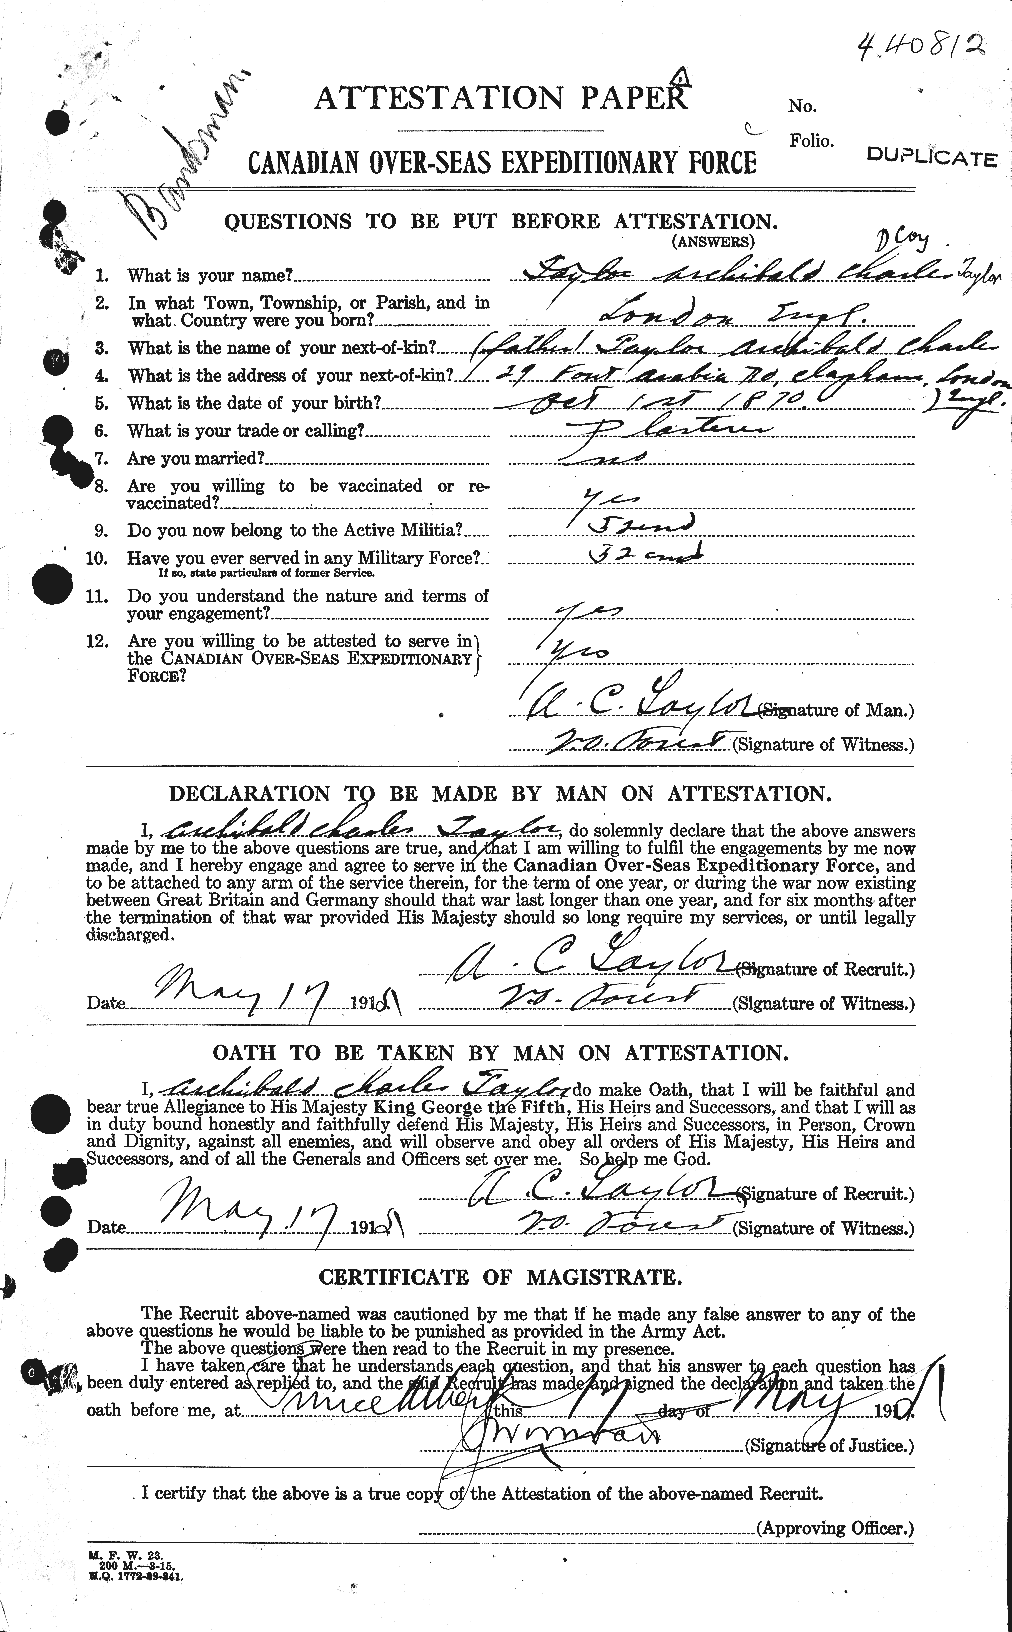 Dossiers du Personnel de la Première Guerre mondiale - CEC 626242a